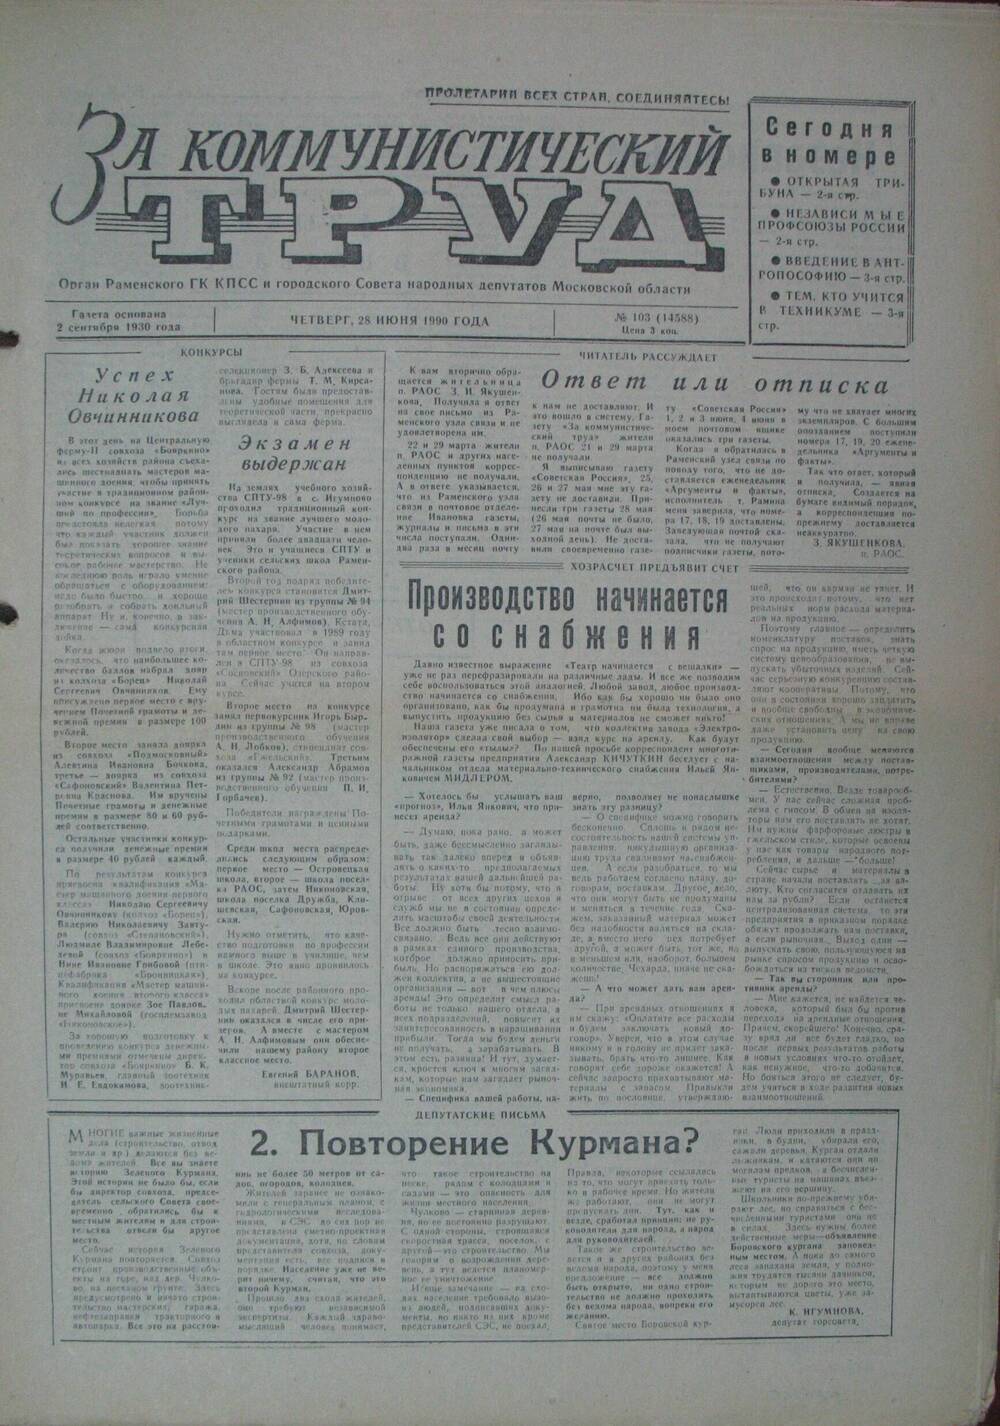 За коммунистический труд, газета № 103 от 28 июня 1990г